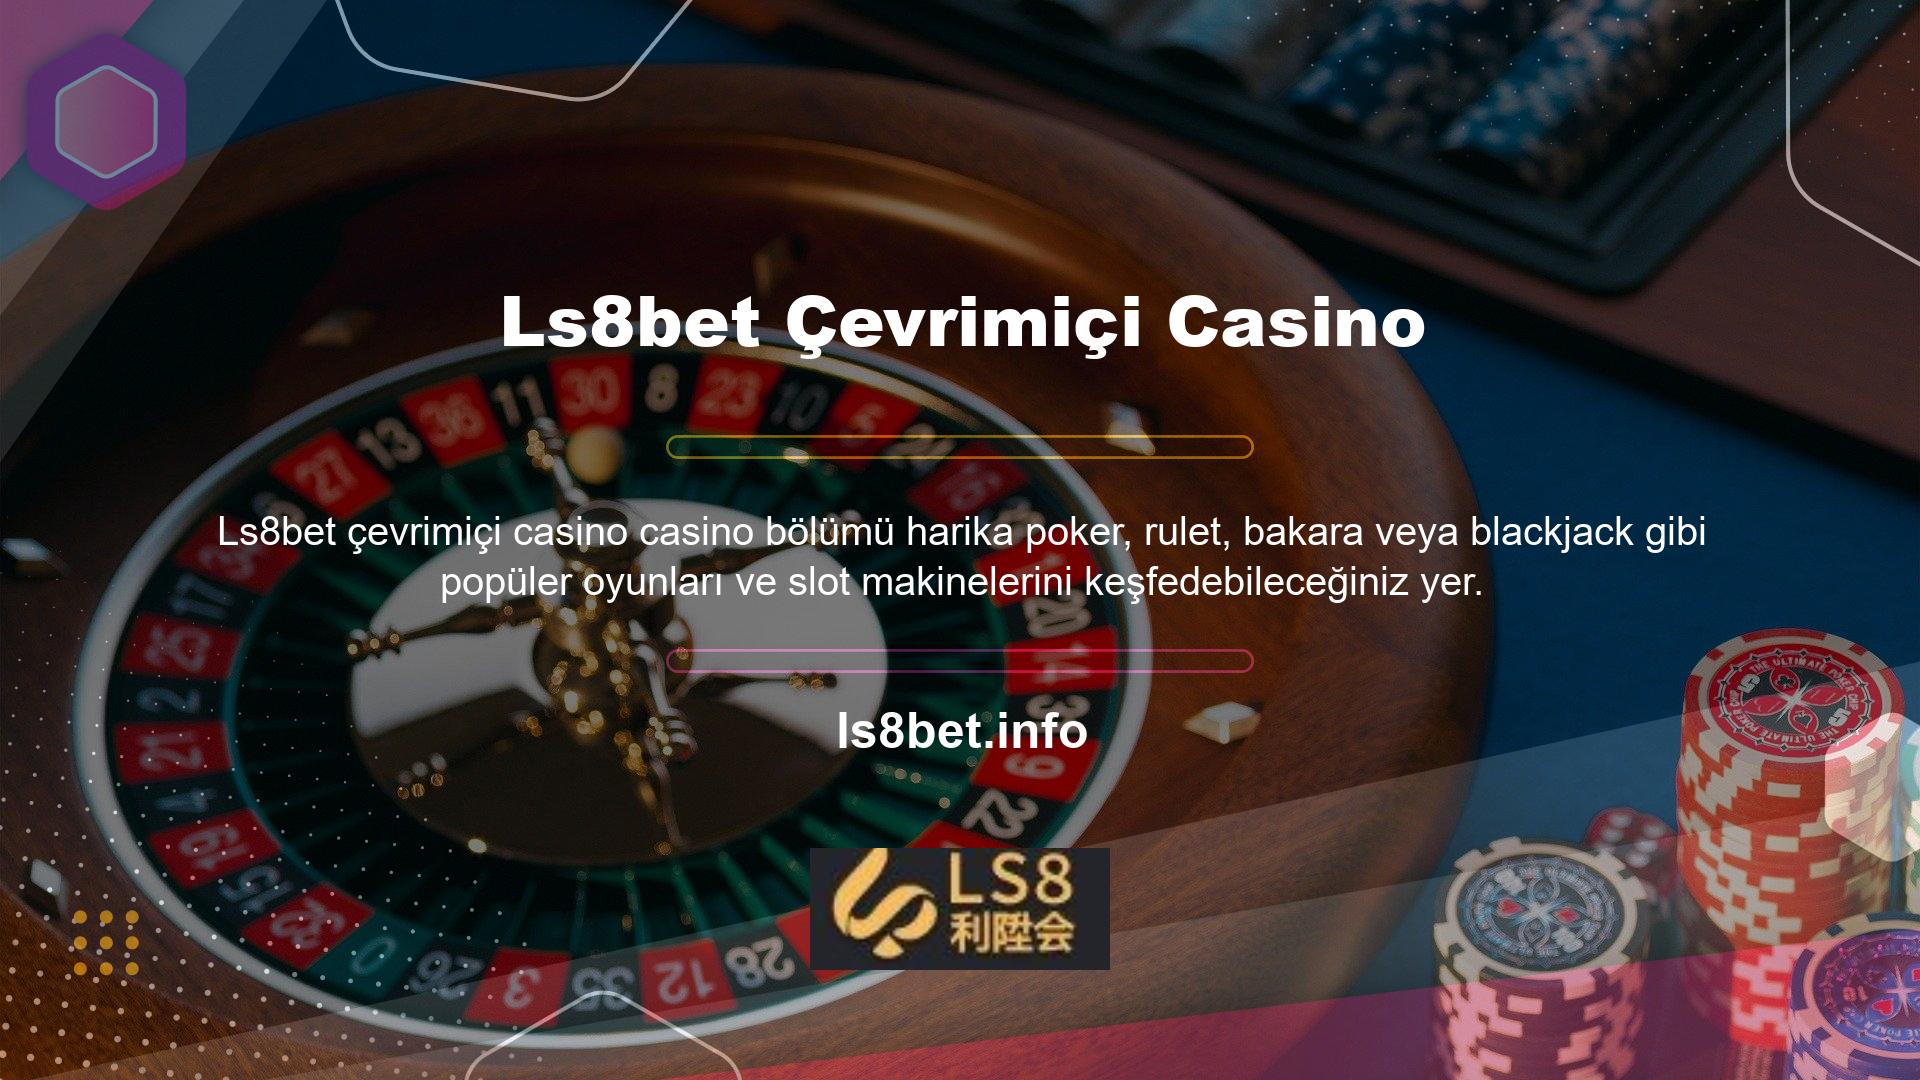 Ls8bet casinosuna kaydolarak ve hakkında bilgi edinerek, markanın deneyimli kurucuları sayesinde bu sektörde öne çıkma yeteneğine sahip olduğunu görebilirsiniz